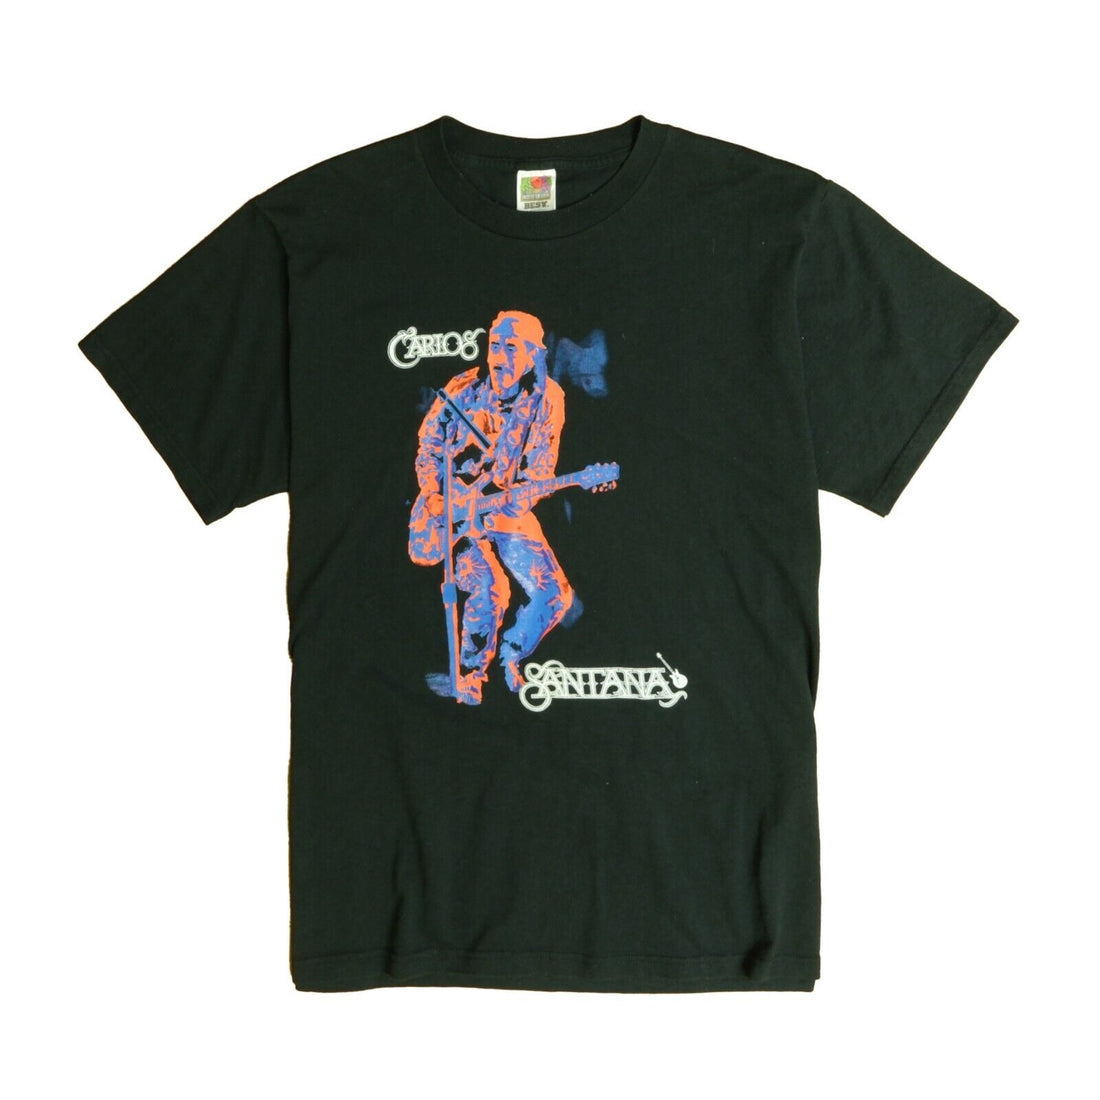 Vintage Carlos Santana The Millenium Concert T-Shirt Size Large Music 2000